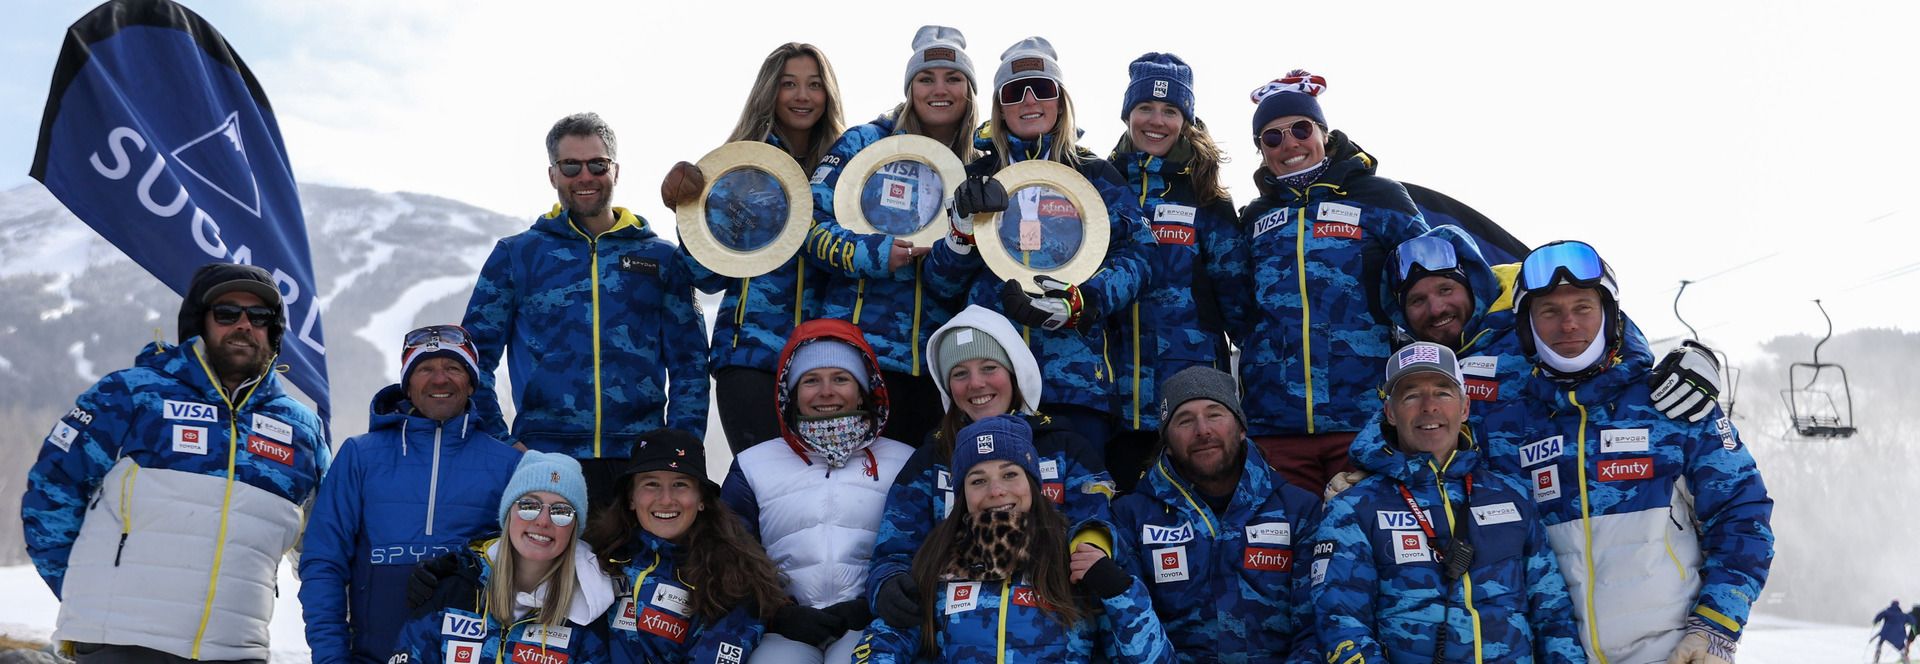 Spyder deja al U.S. Ski Team después de 33 años de patrocinio